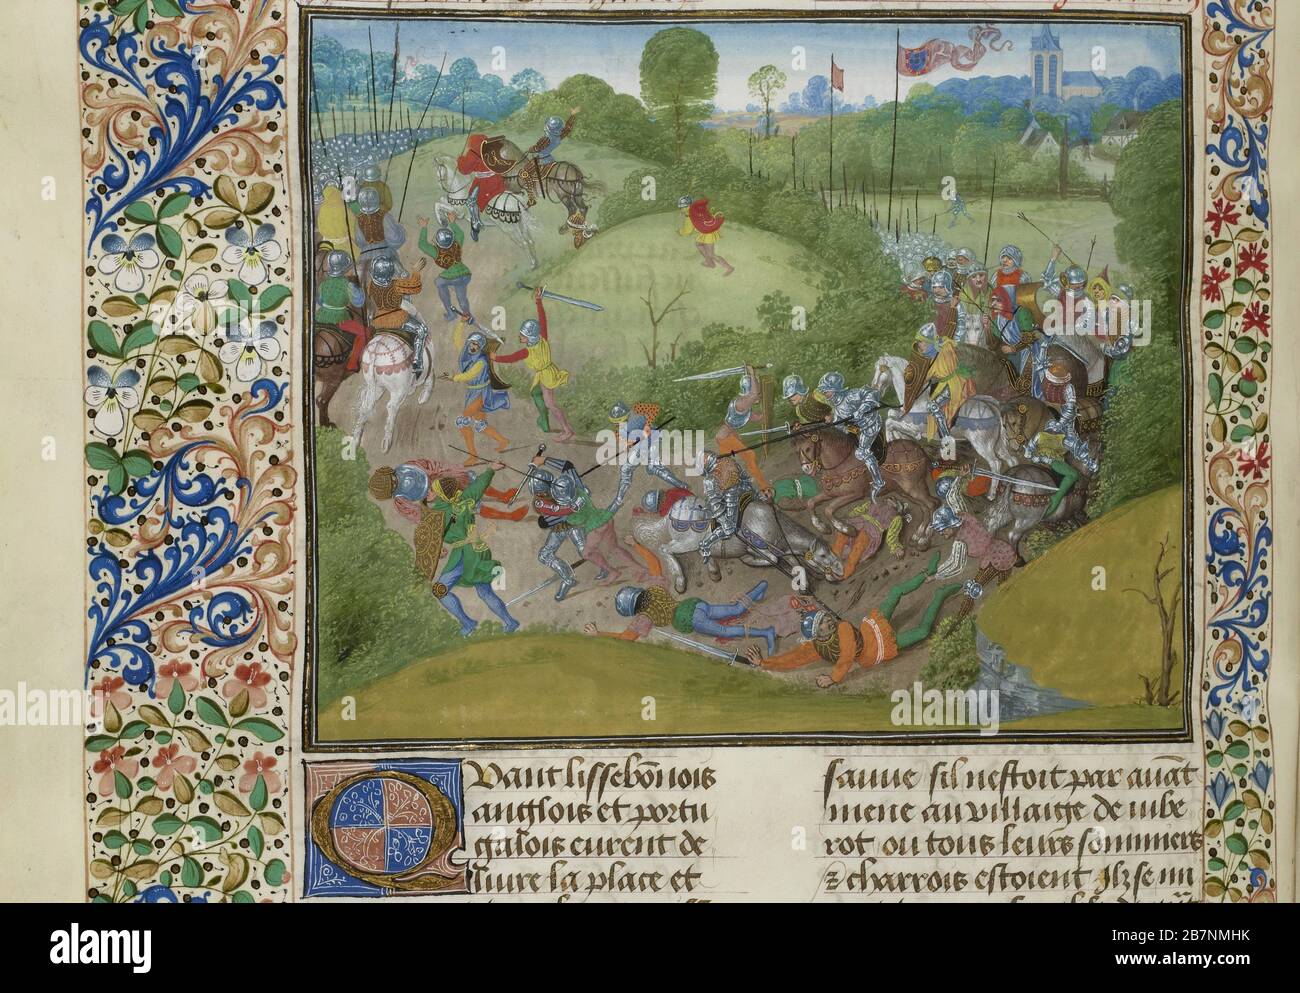 La bataille d'Aljubarrota le 14 août 1385 (miniature des grandes chroniques de France par Jean Froissart), vers 1470-1475. Trouvé dans la Collection de Biblioth&#xe8;que nationale de France. Banque D'Images